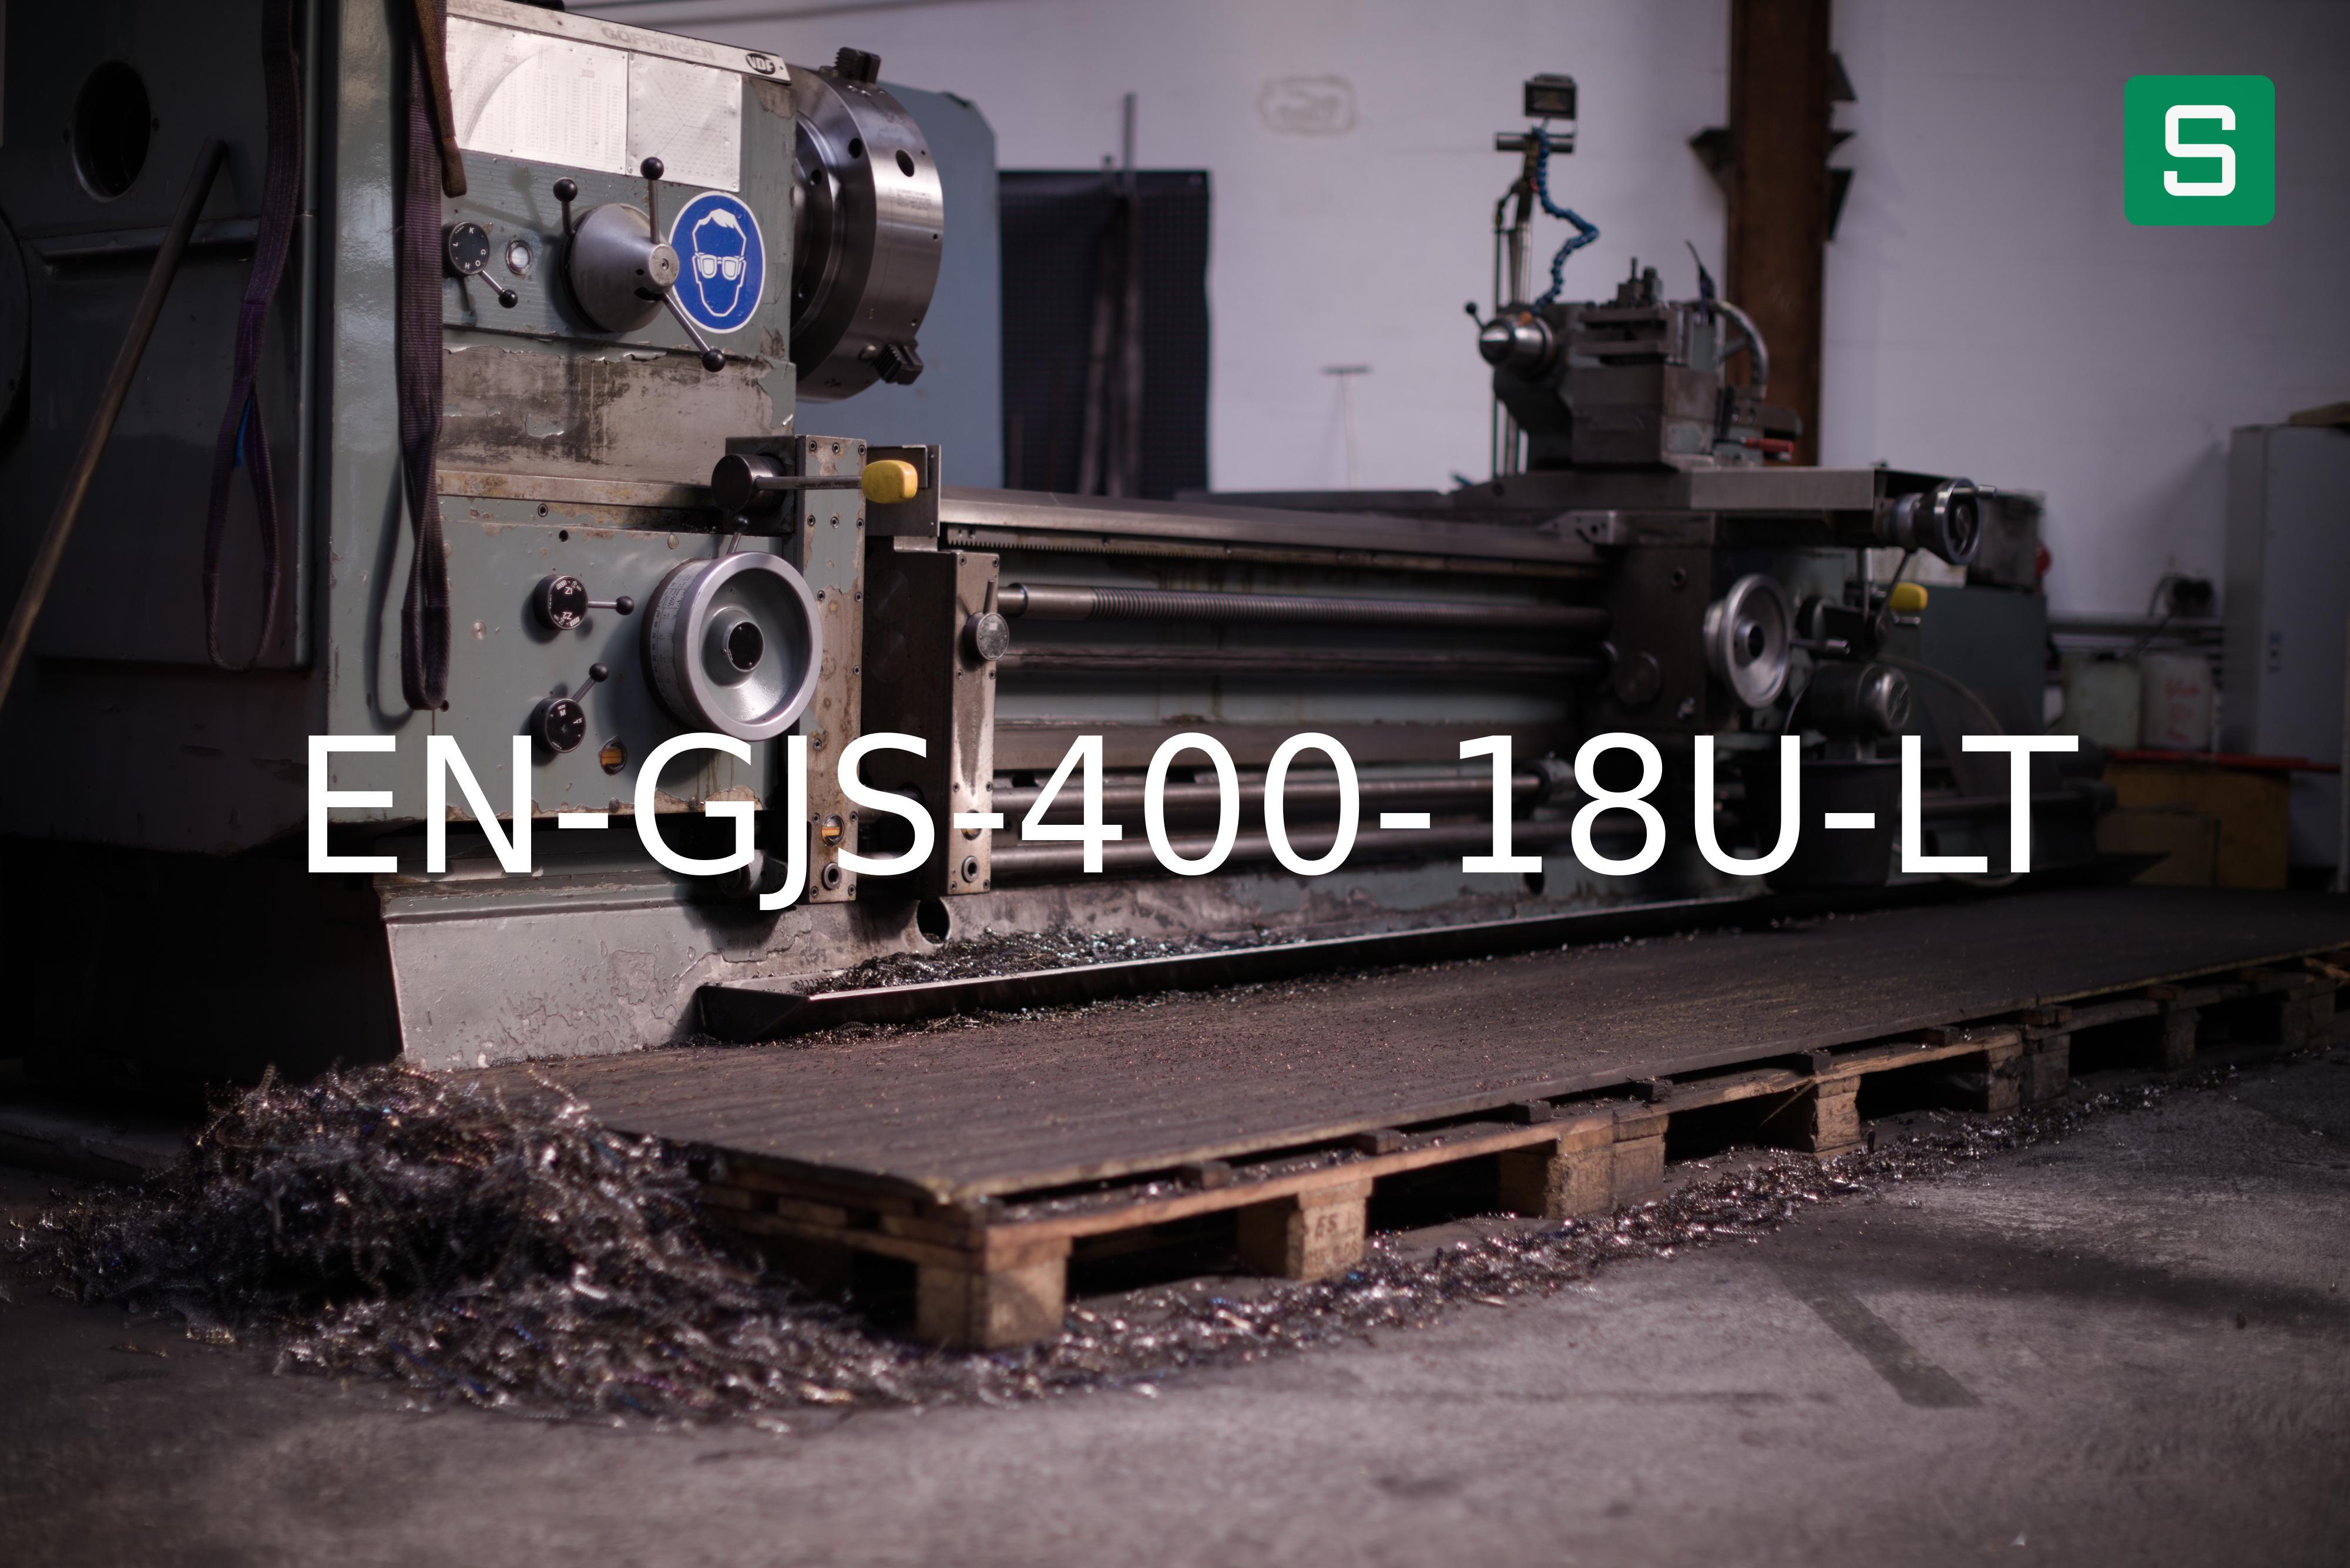 Steel Material: EN-GJS-400-18U-LT